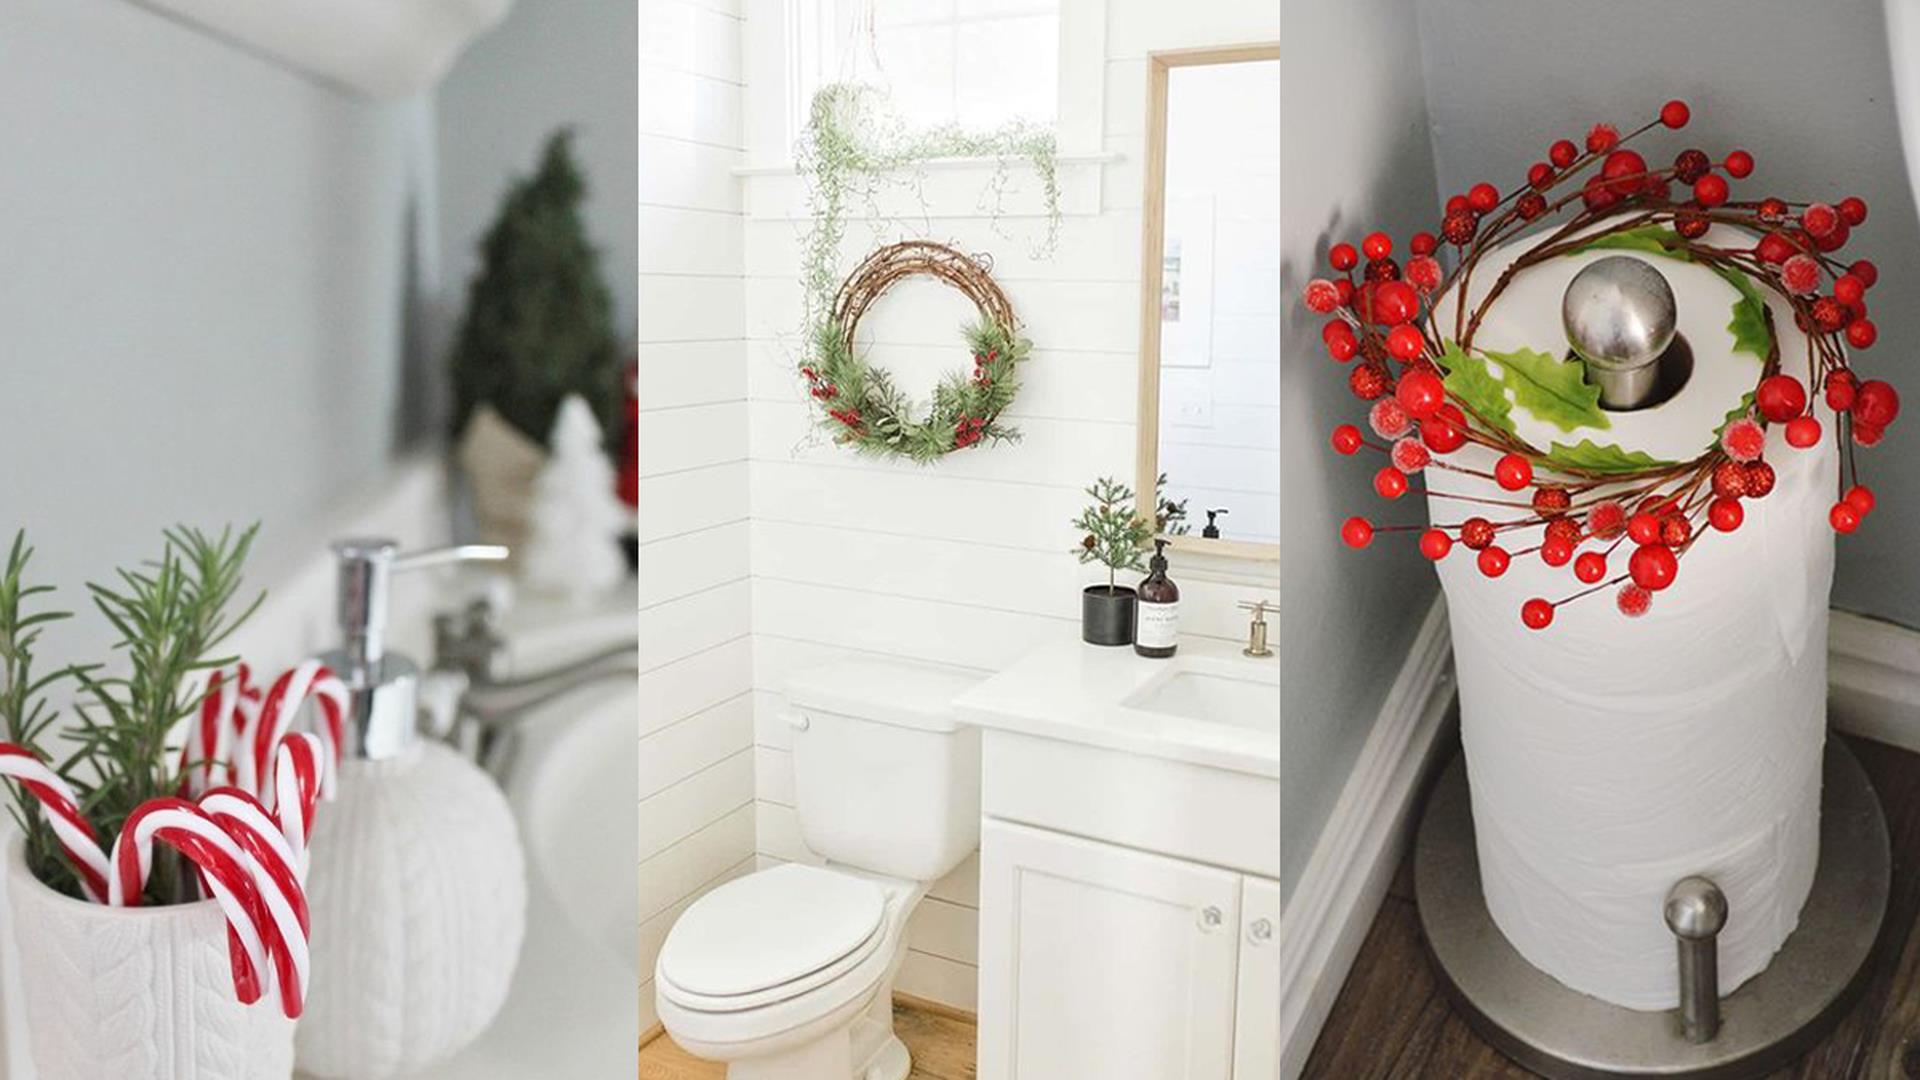 Come decorare il bagno per Natale - Idee Arredo Bagno - Blog